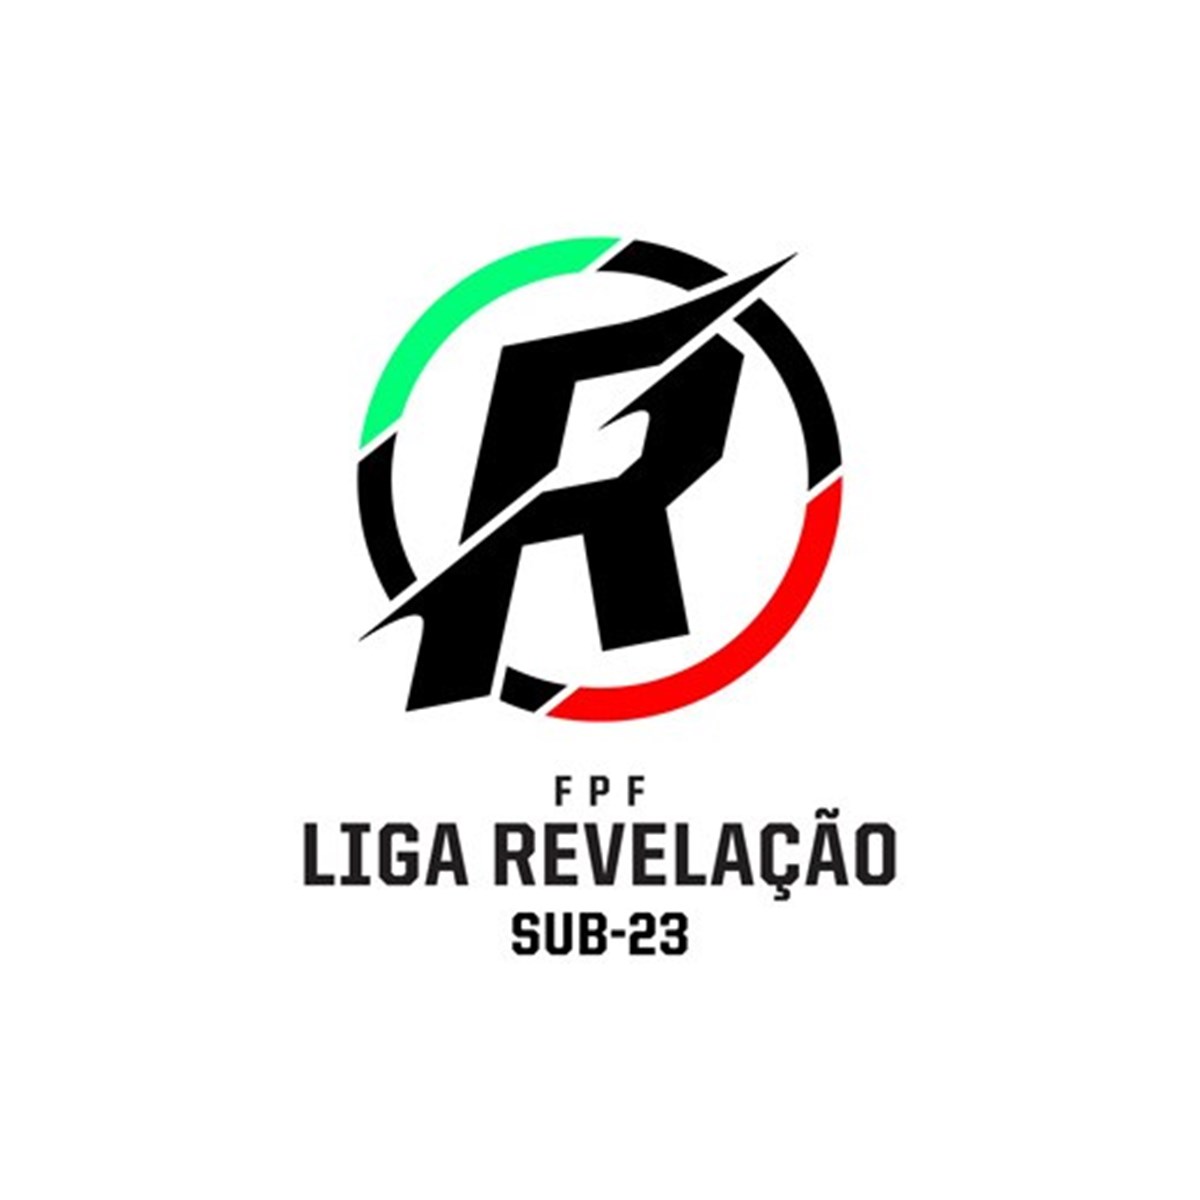 Campeonato sub-23 vai chamar-se Liga Revelação - Futebol Nacional - Jornal  Record